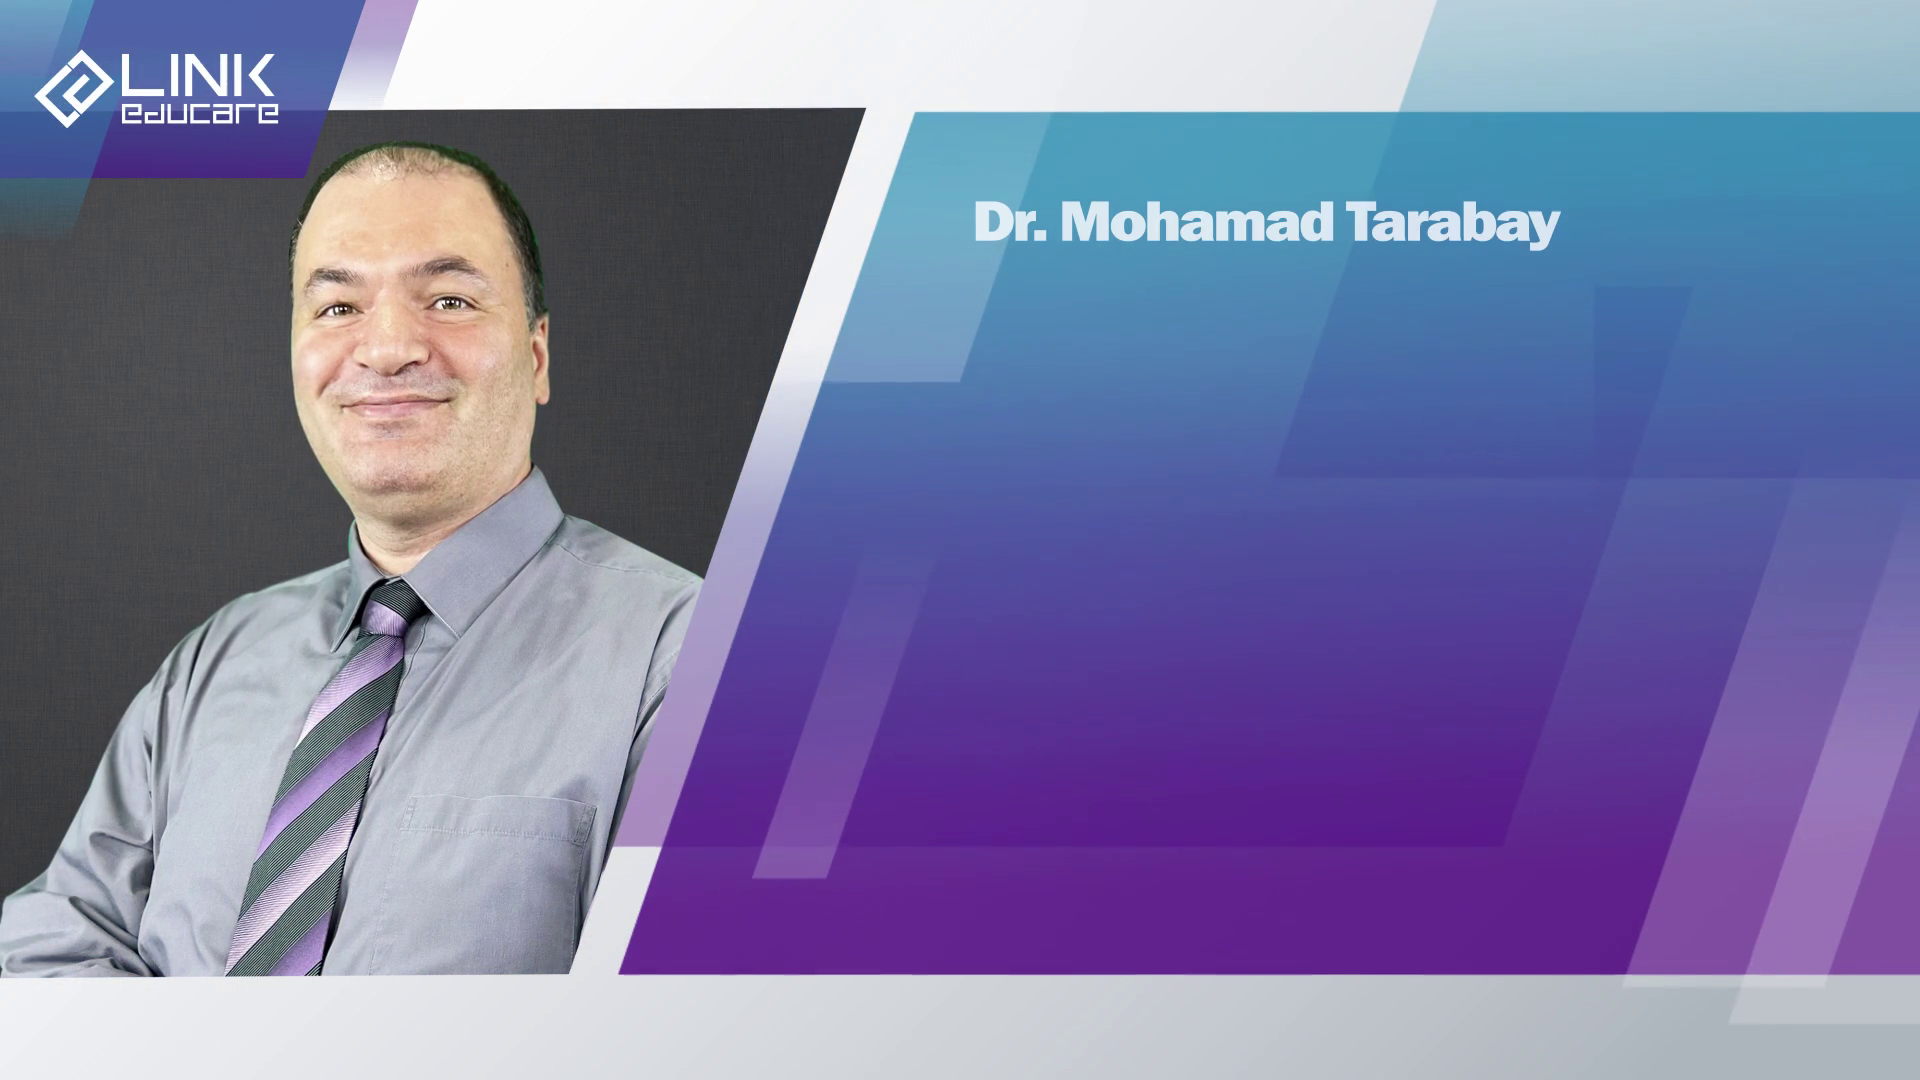 Dr. Mohamad Tarabay